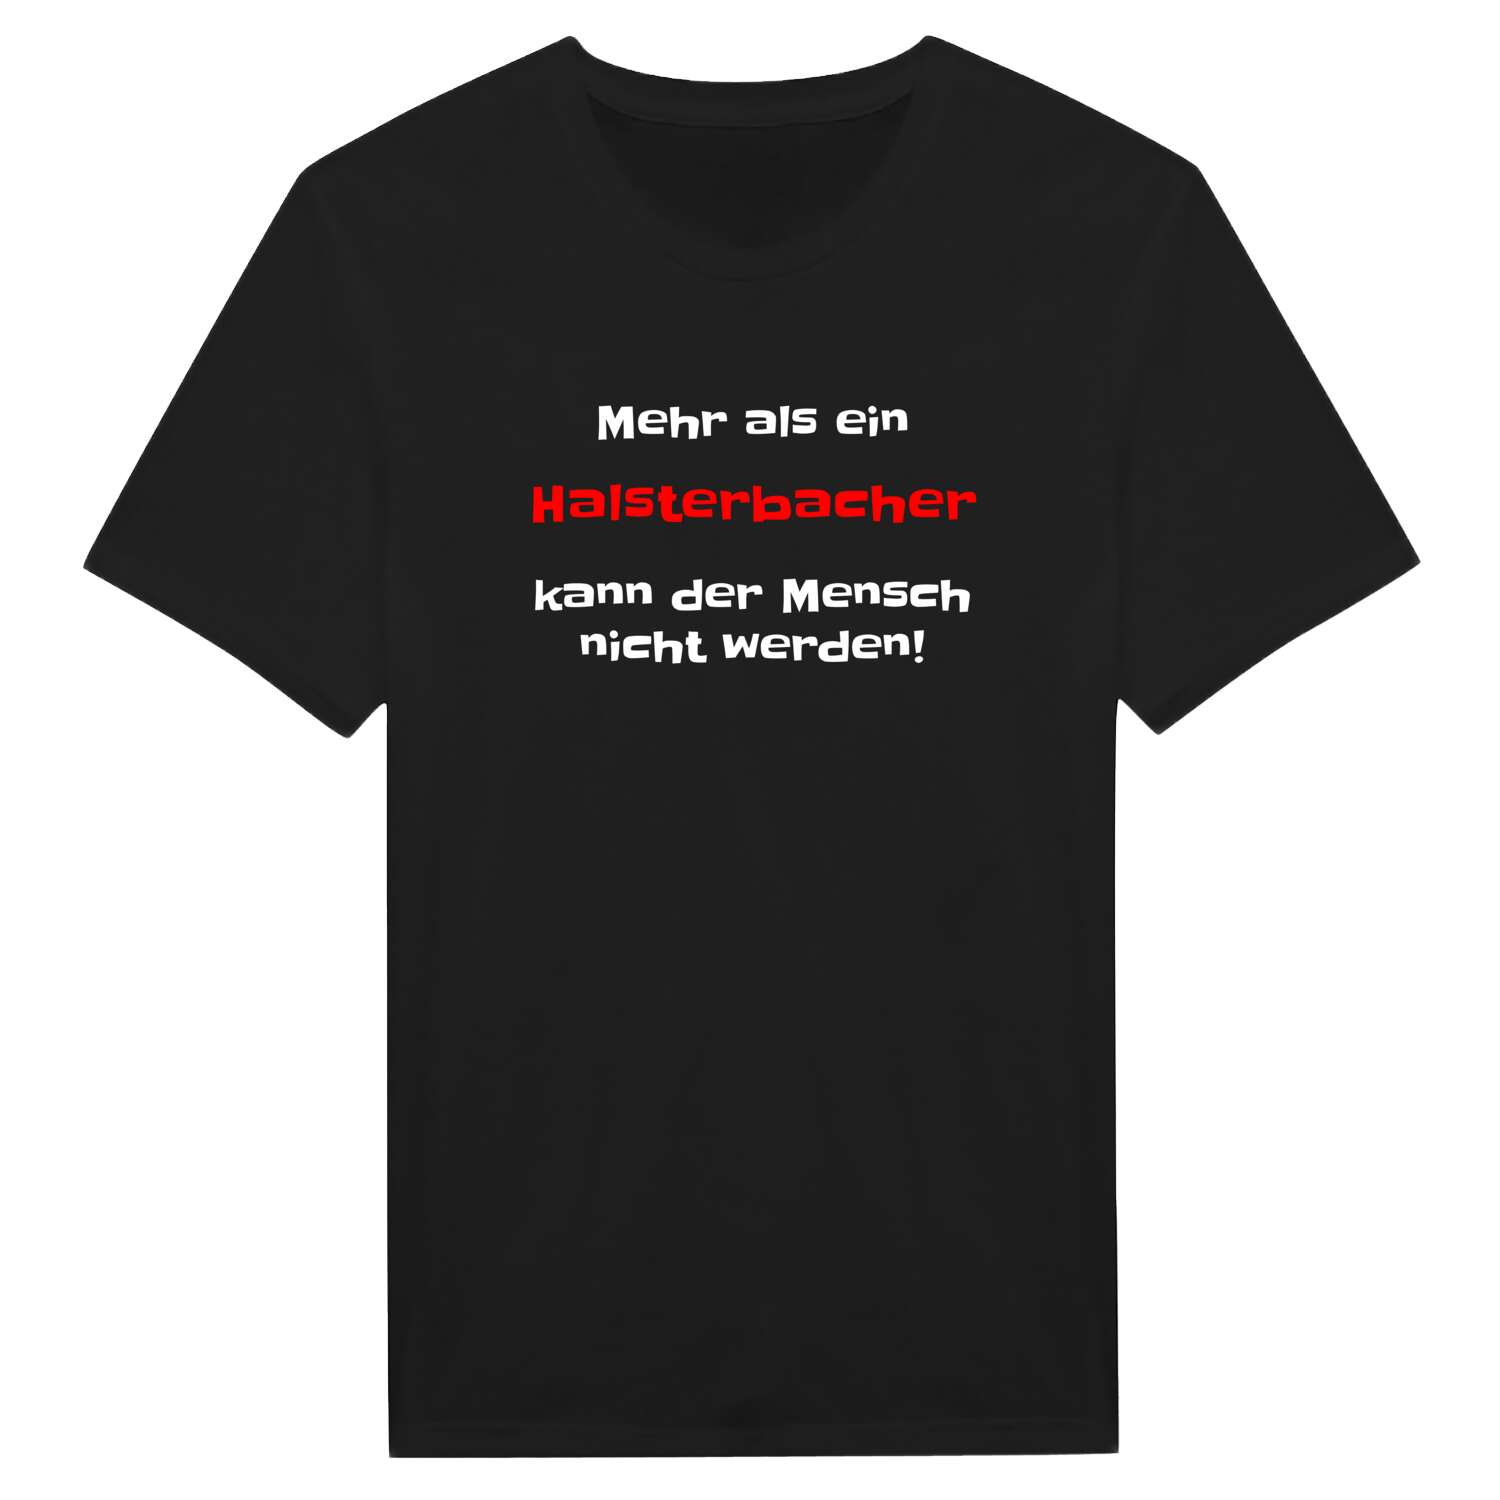 Halsterbach T-Shirt »Mehr als ein«